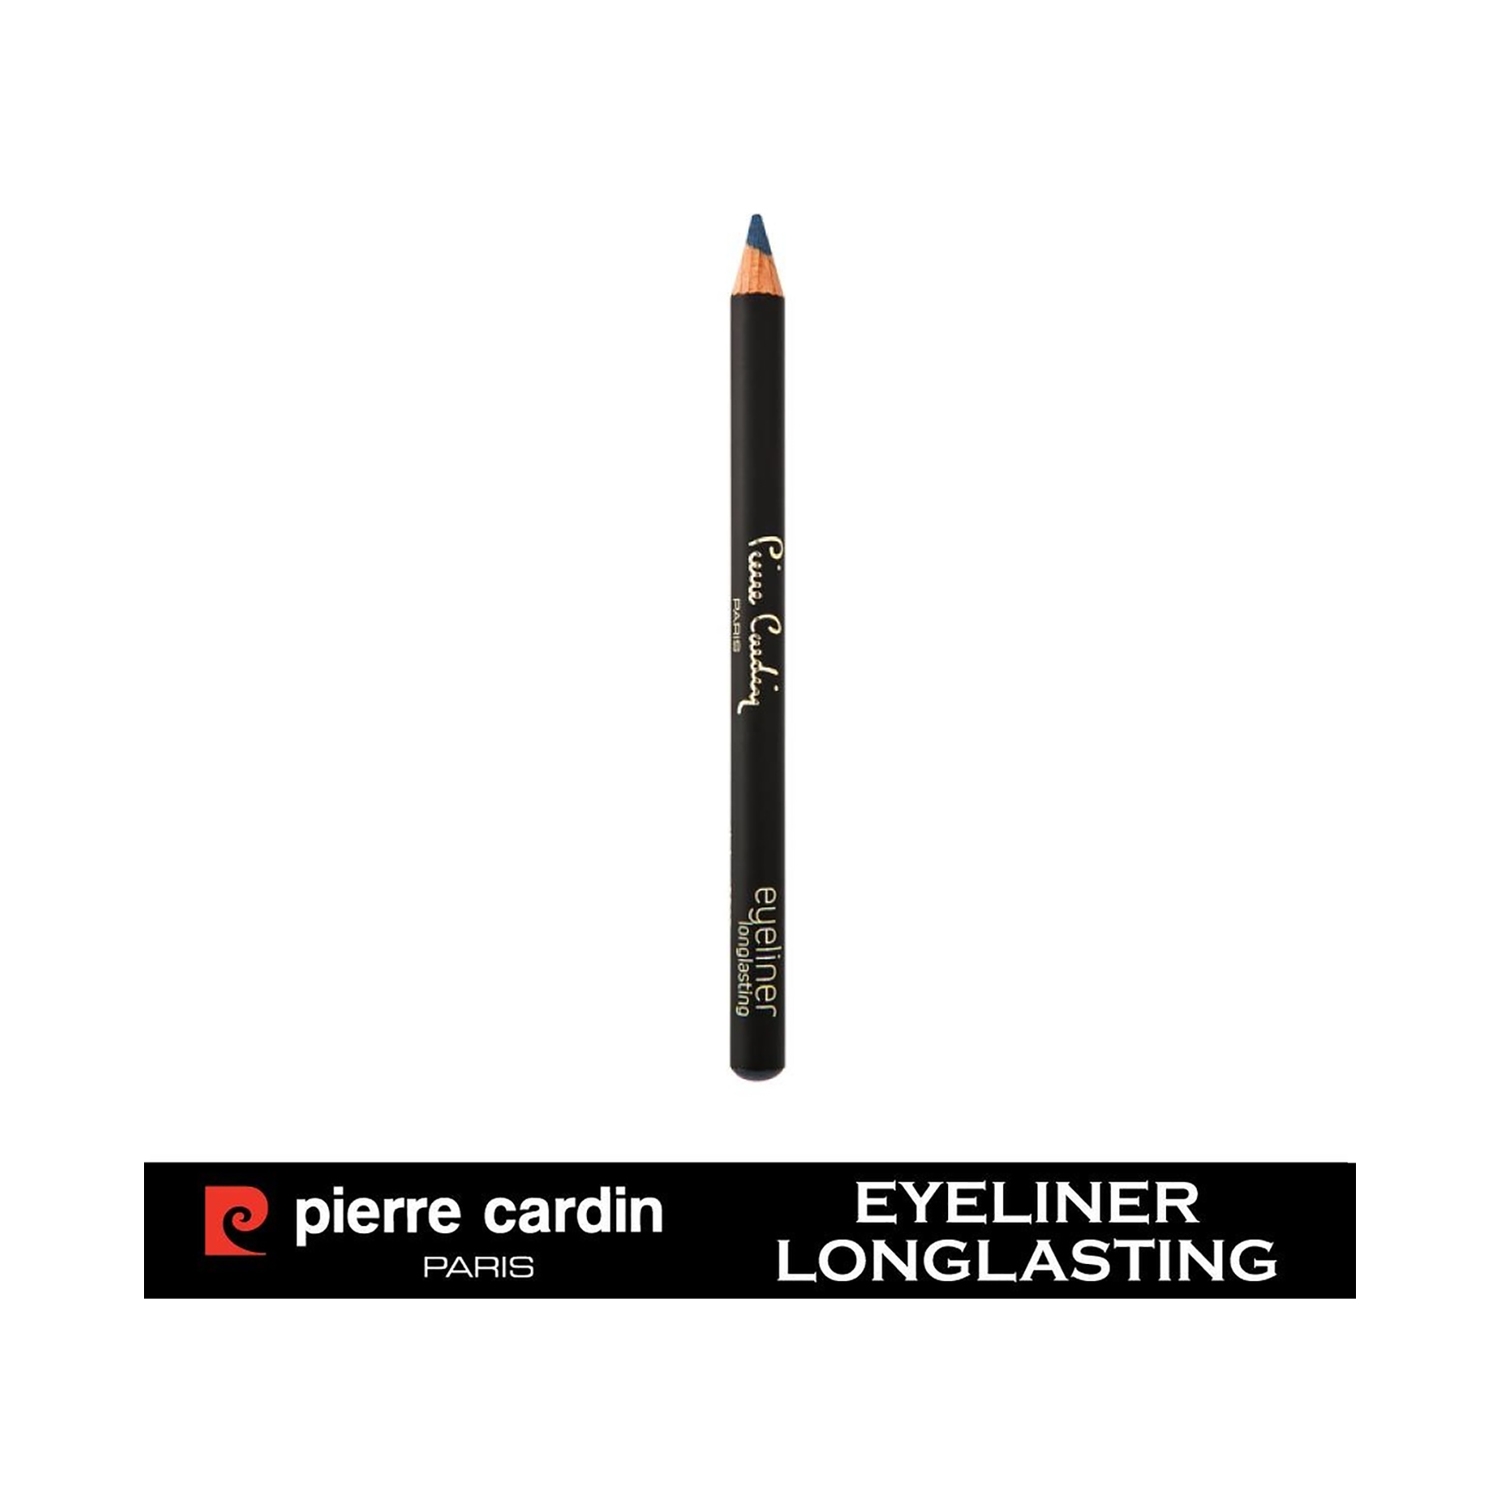 Pierre Cardin Paris Long Lasting Eyeliner Pencil - 305 Deep Ocean (0.04g)